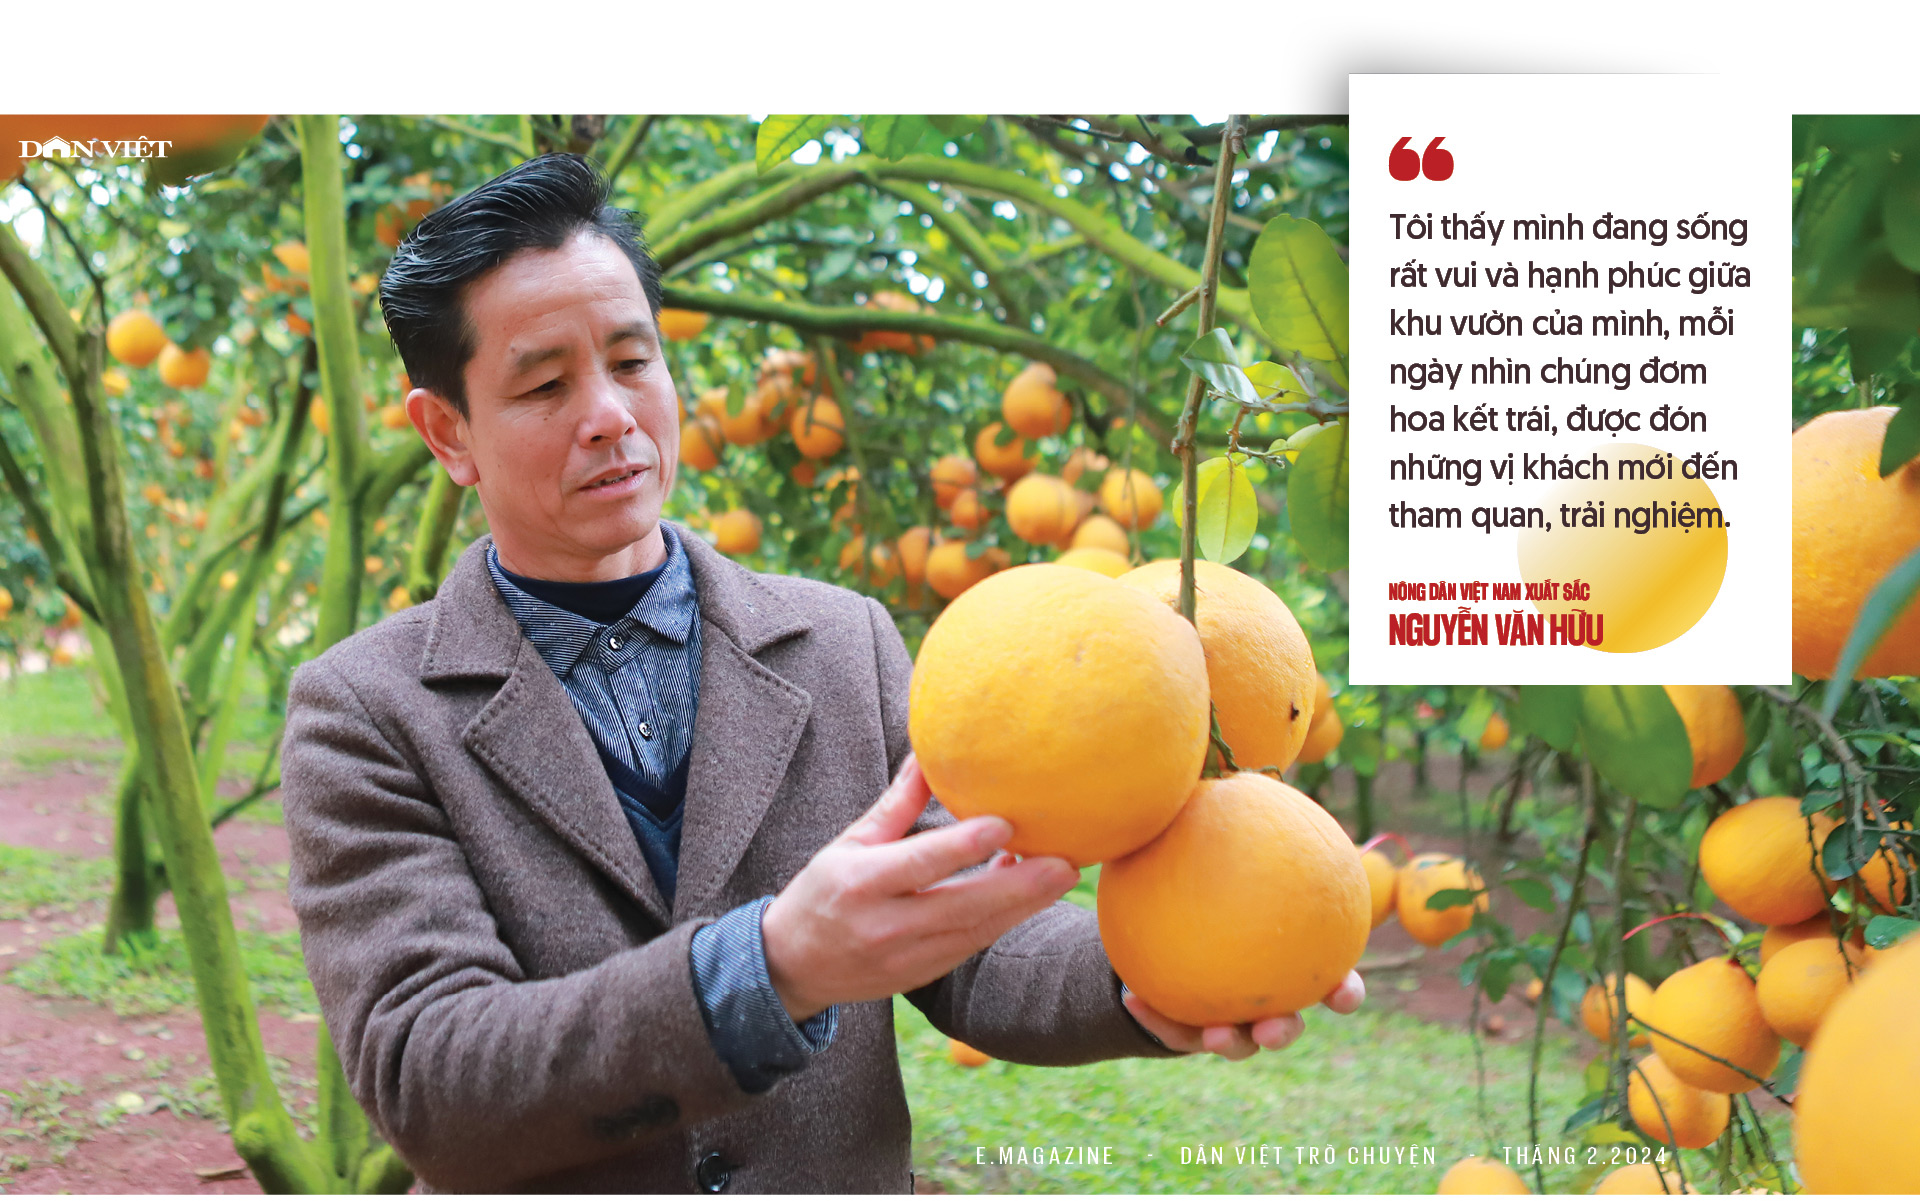 Nông dân Việt Nam xuất sắc Nguyễn Văn Hữu: "Cãi" cả họ phá vải thiều trồng bưởi và khu vườn hạnh phúc- Ảnh 10.